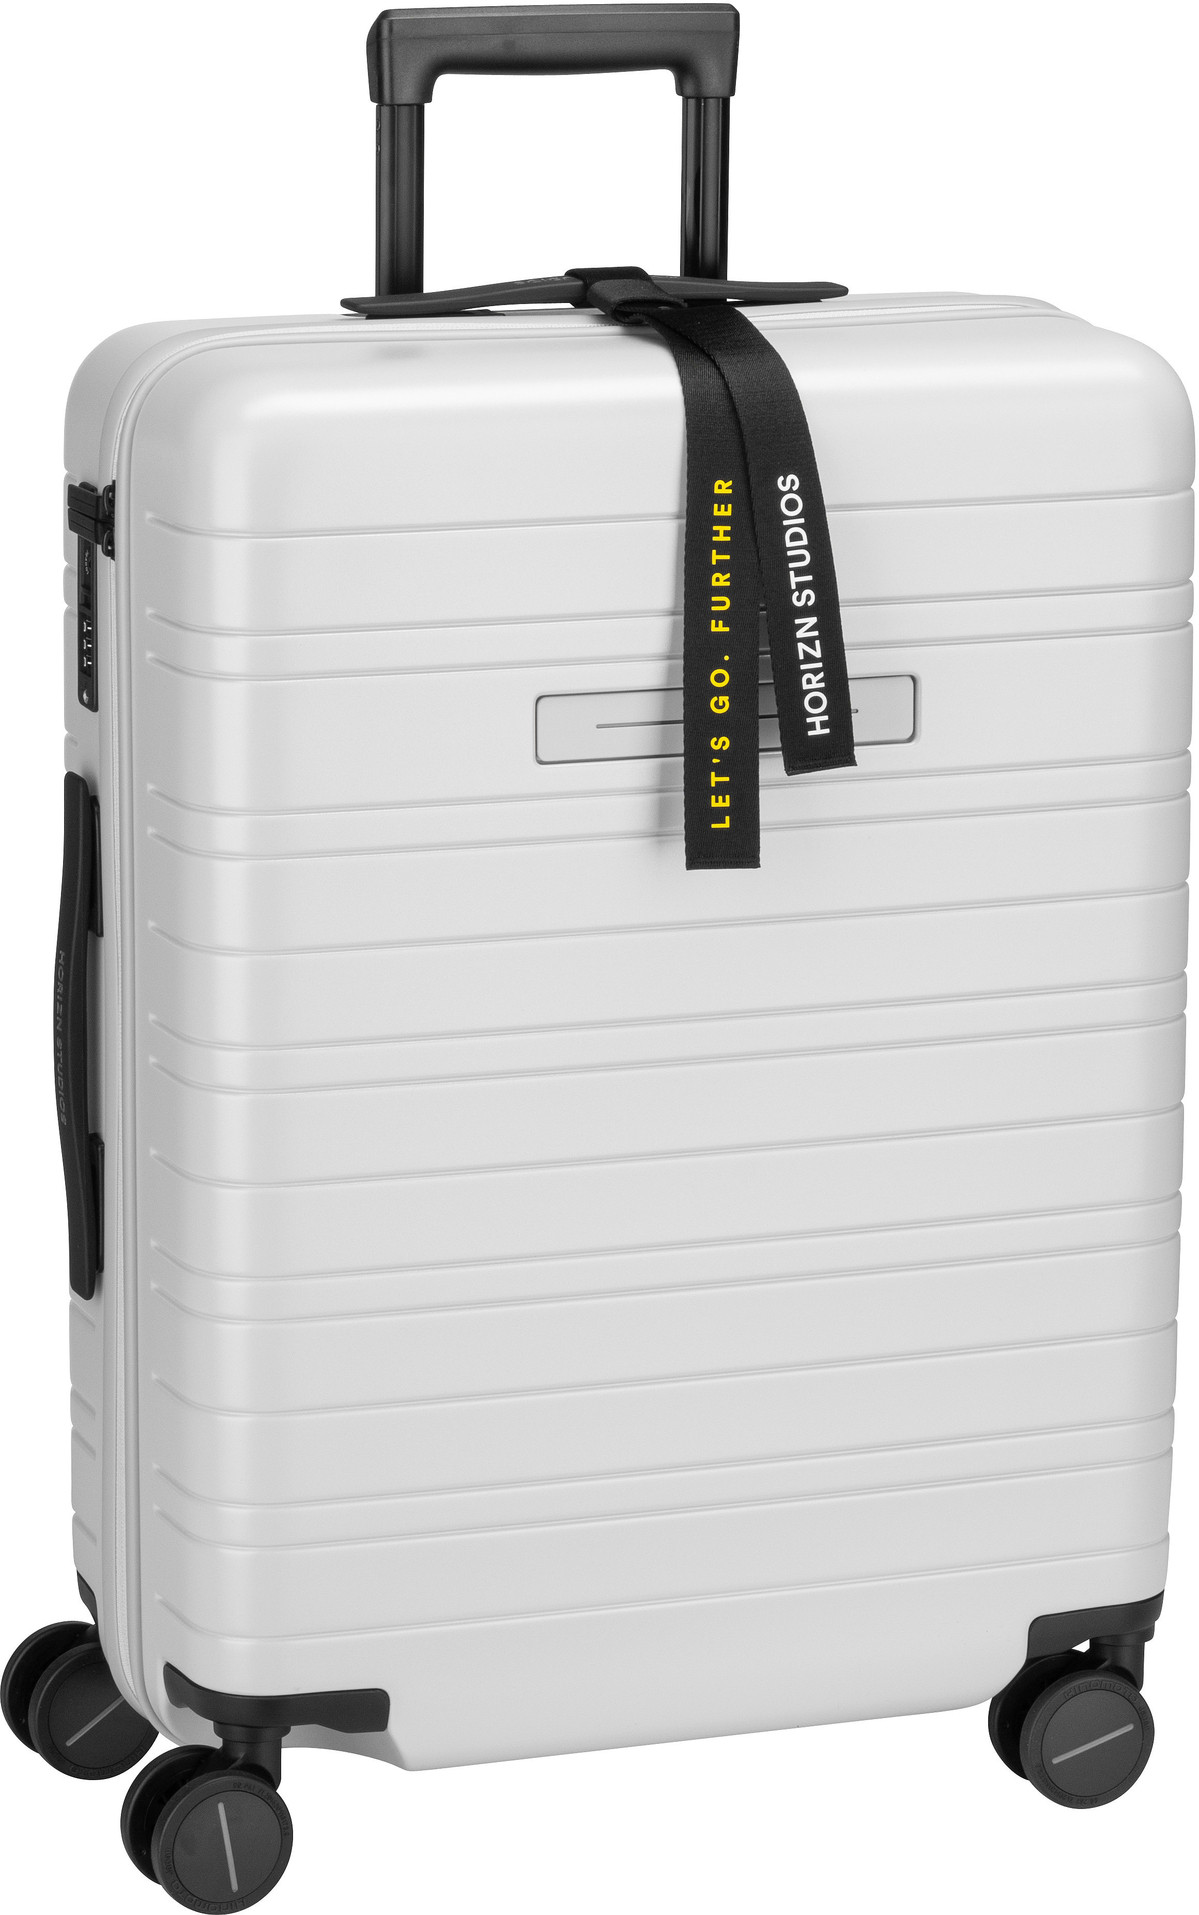 Horizn Studios H6 Essential Check-In Luggage - Light Quartz Grey